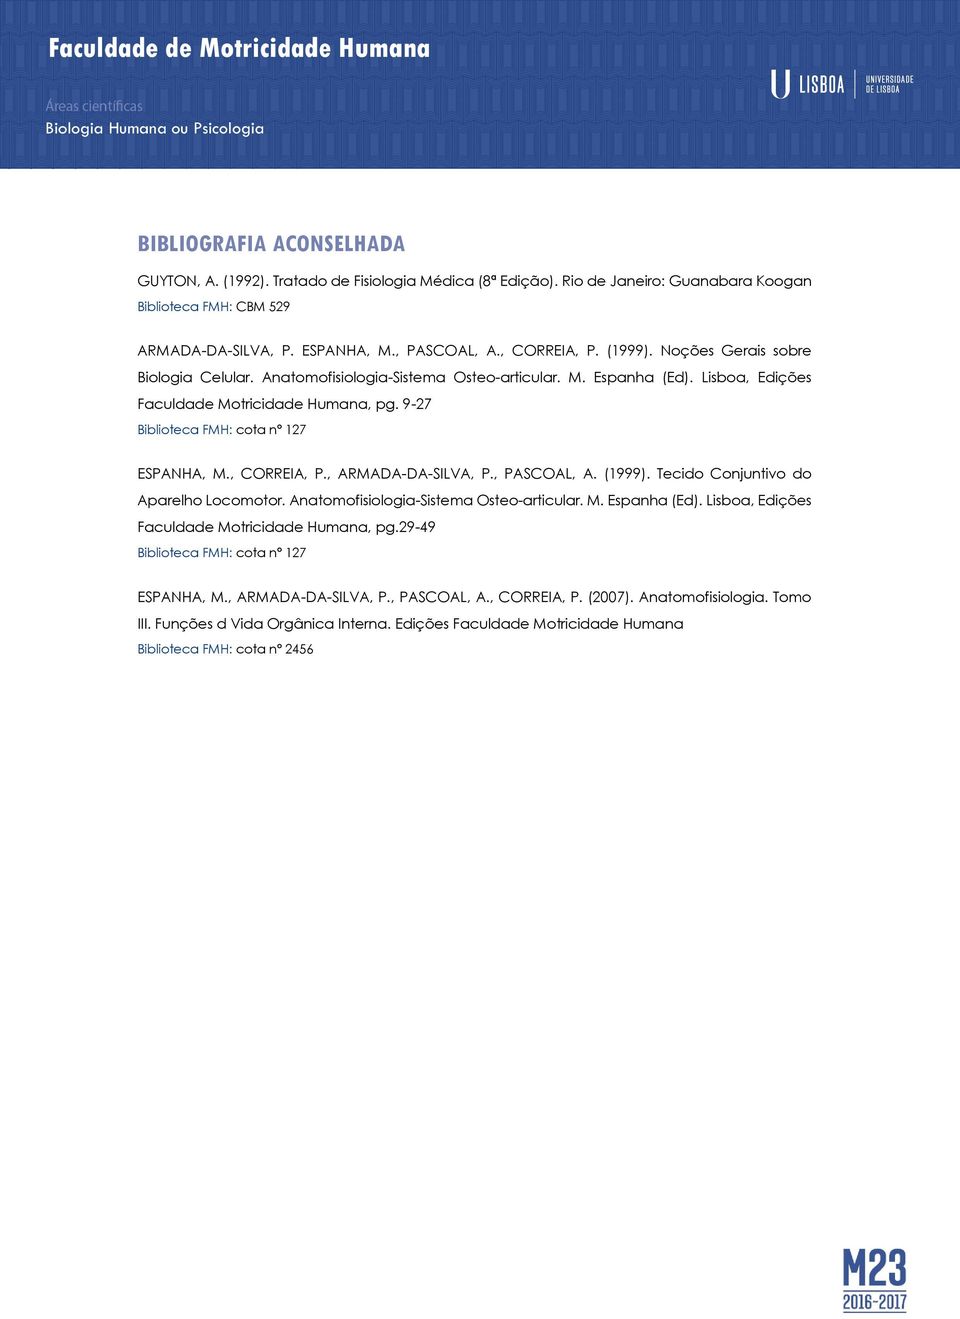 , CORREIA, P., ARMADA-DA-SILVA, P., PASCOAL, A. (1999). Tecido Conjuntivo do Aparelho Locomotor. Anatomofisiologia-Sistema Osteo-articular. M. Espanha (Ed).